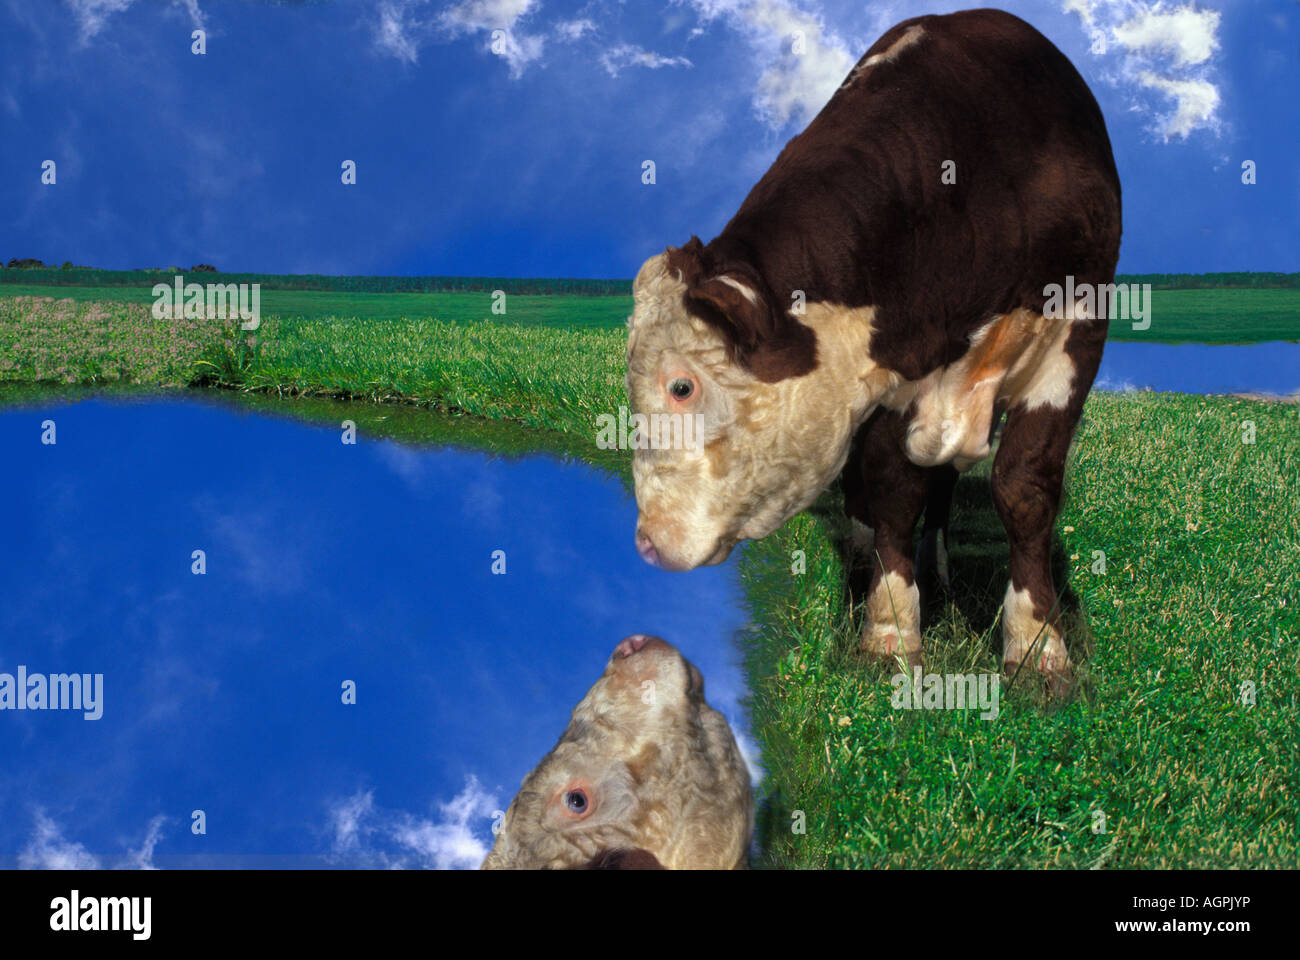 Narcisse : vache Hereford interrogés dans le champ vert voit son reflet dans l'eau avec ciel bleu Banque D'Images